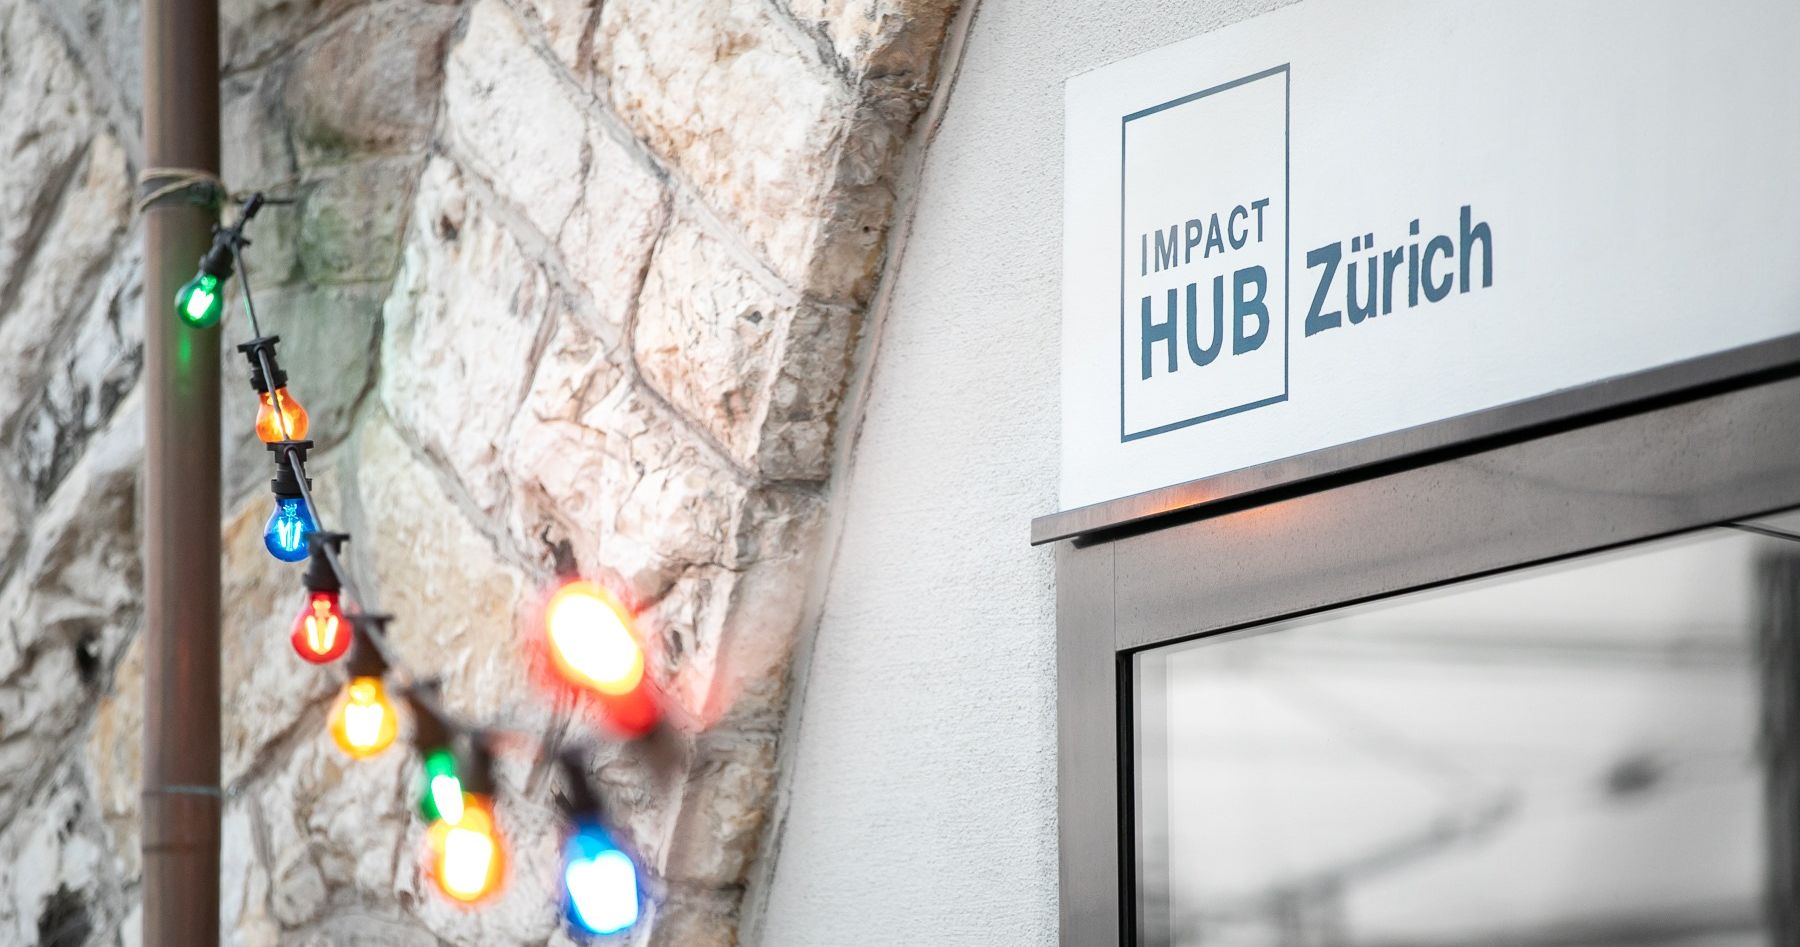 ImpactHub Zurich